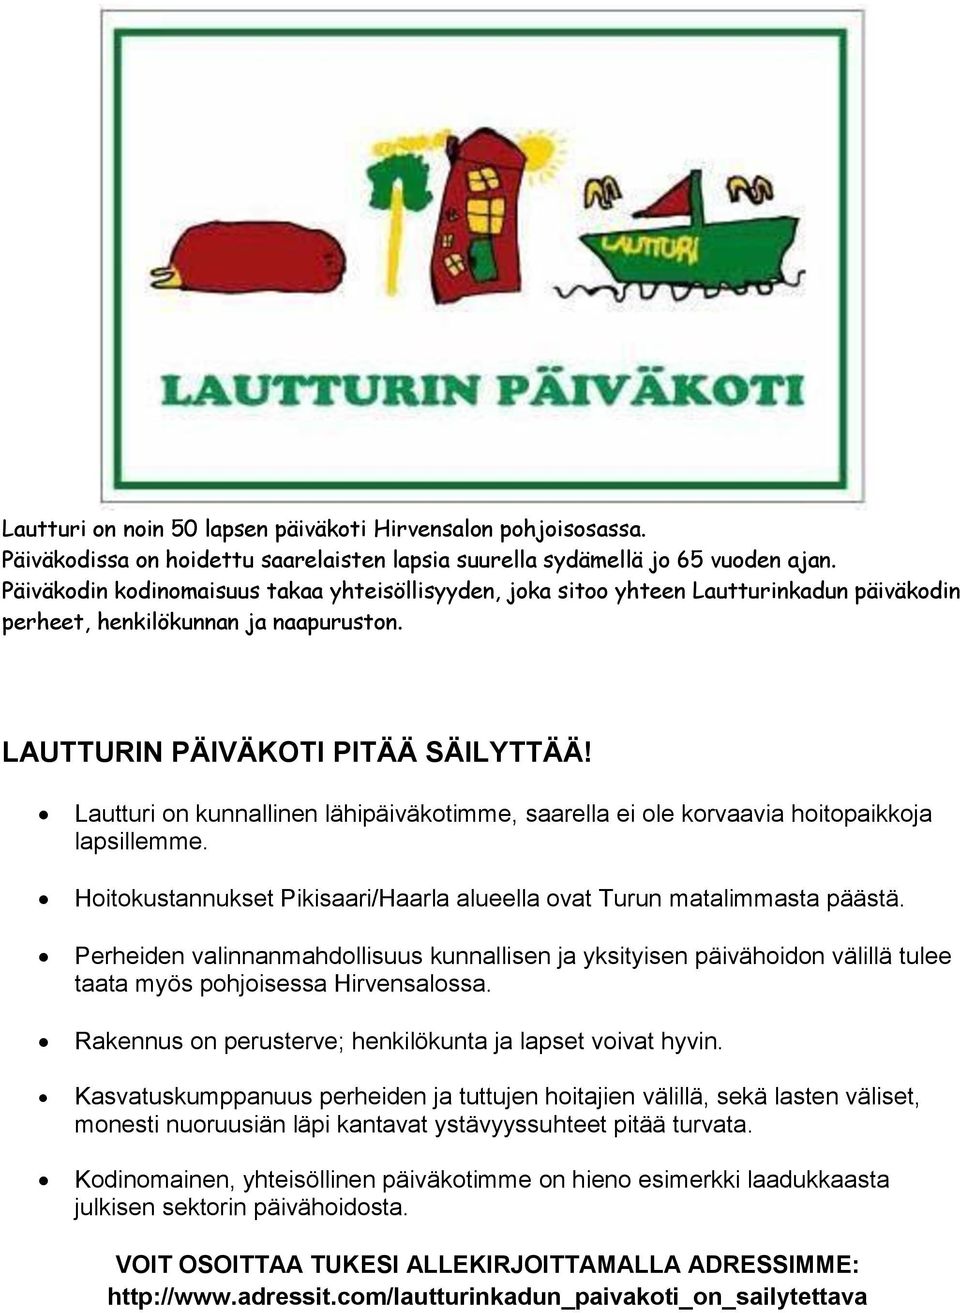 Lautturi on kunnallinen lähipäiväkotimme, saarella ei ole korvaavia hoitopaikkoja lapsillemme. Hoitokustannukset Pikisaari/Haarla alueella ovat Turun matalimmasta päästä.